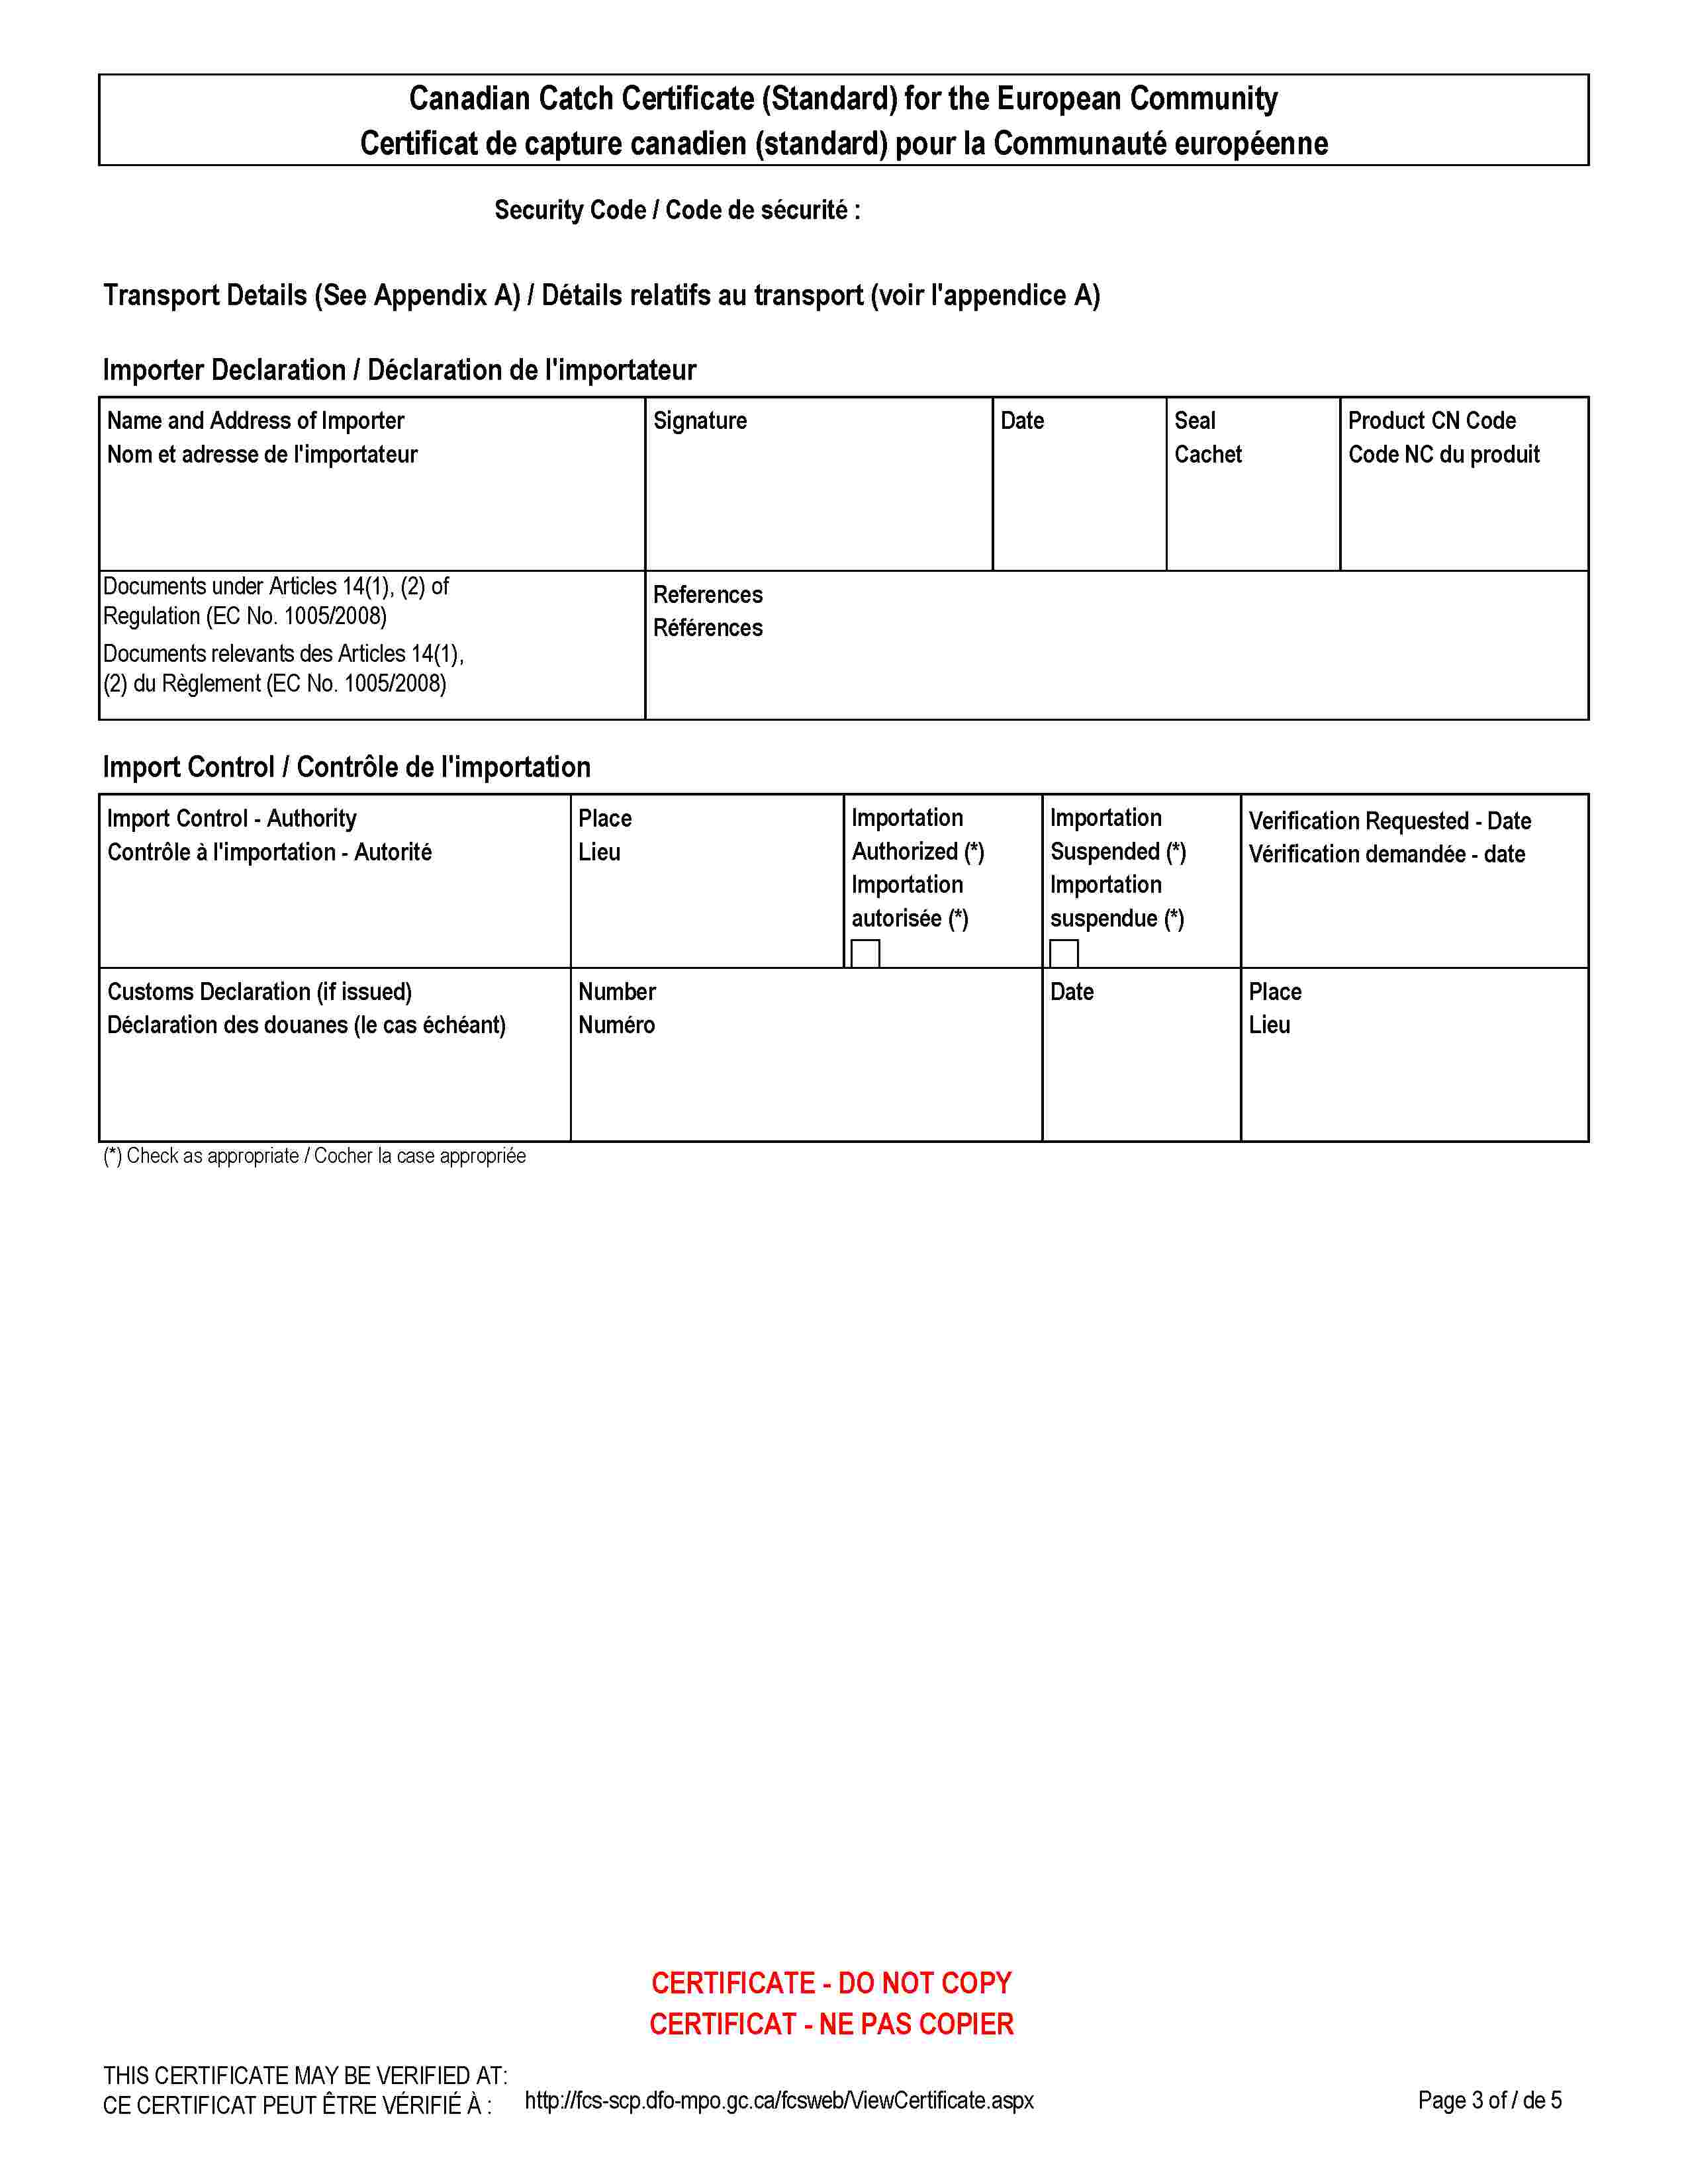 Canadian Catch Certificate (Standard) for the European CommunityCertificat de capture canadien (standard) pour la Communauté européenneSecurity Code / Code de sécurité :Transport Details (See Appendix A) / Détails relatifs au transport (voir l'appendice A)Importer Declaration / Déclaration de l'importateurName and Address of ImporterNom et adresse de l'importateurSignatureDateSealCachetProduct CN CodeCode NC du produitDocuments under Articles 14(1), (2) of Regulation (EC No. 1005/2008)Documents relevants des Articles 14(1), (2) du Règlement (EC No. 1005/2008)ReferencesRéférencesImport Control / Contrôle de l'importationImport Control - AuthorityImport Control - Authority Contrôle à l'importation - AutoritéPlaceLieuImportation Authorized (*)Importation autorisée (*)Importation Suspended (*)Importation suspendue (*)Verification Requested - DateVérification demandée - dateCustoms Declaration (if issued)Déclaration des douanes (le cas échéant)NumberNuméroDatePlaceLieuCERTIFICATE - DO NOT COPYCERTIFICAT - NE PAS COPIERTHIS CERTIFICATE MAY BE VERIFIED AT:CE CERTIFICAT PEUT ÊTRE VÉRIFIÉ À :http://fcs-scp.dfo-mpo.gc.ca/fcsweb/ViewCertificate.aspx